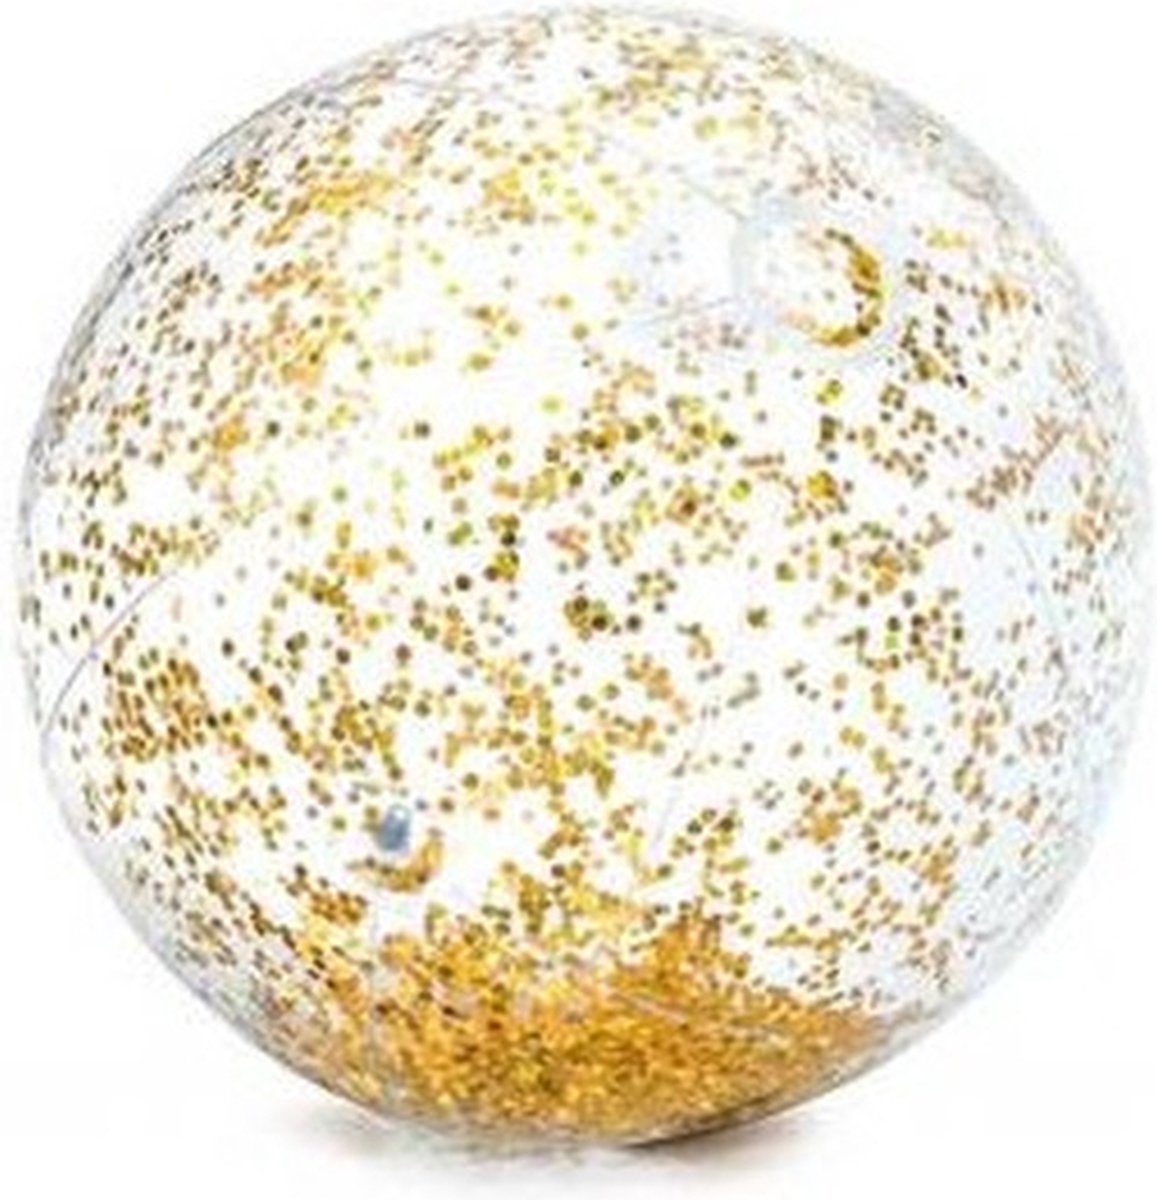 Harddo Gonflable Glitter Ballon De Plage Glitter Confetti Ballon De Plage Transparent Piscine Party Ball pour Summer Beach Eau Jouet Jouet 